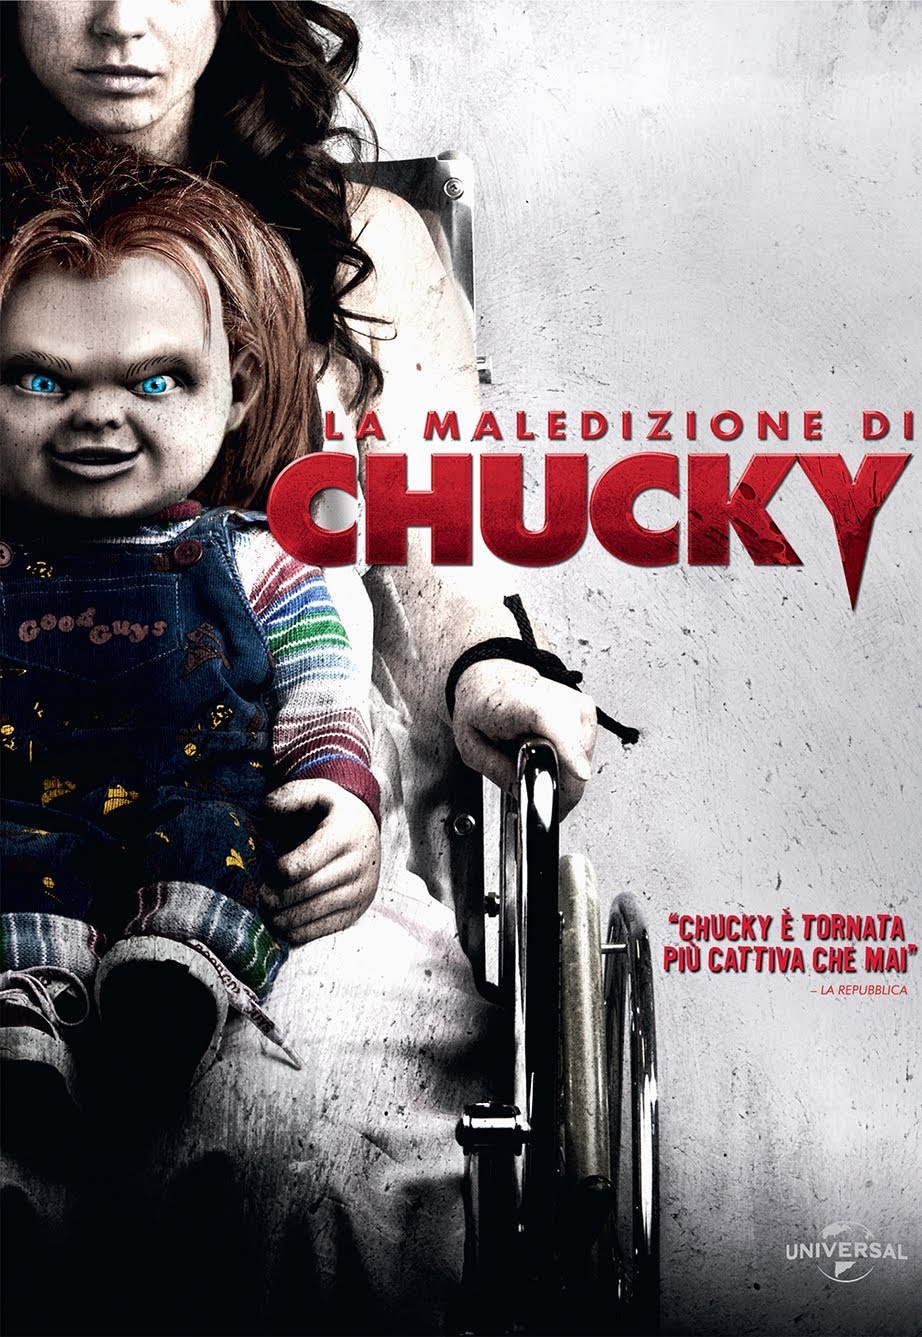 La maledizione di Chucky [HD] (2013)